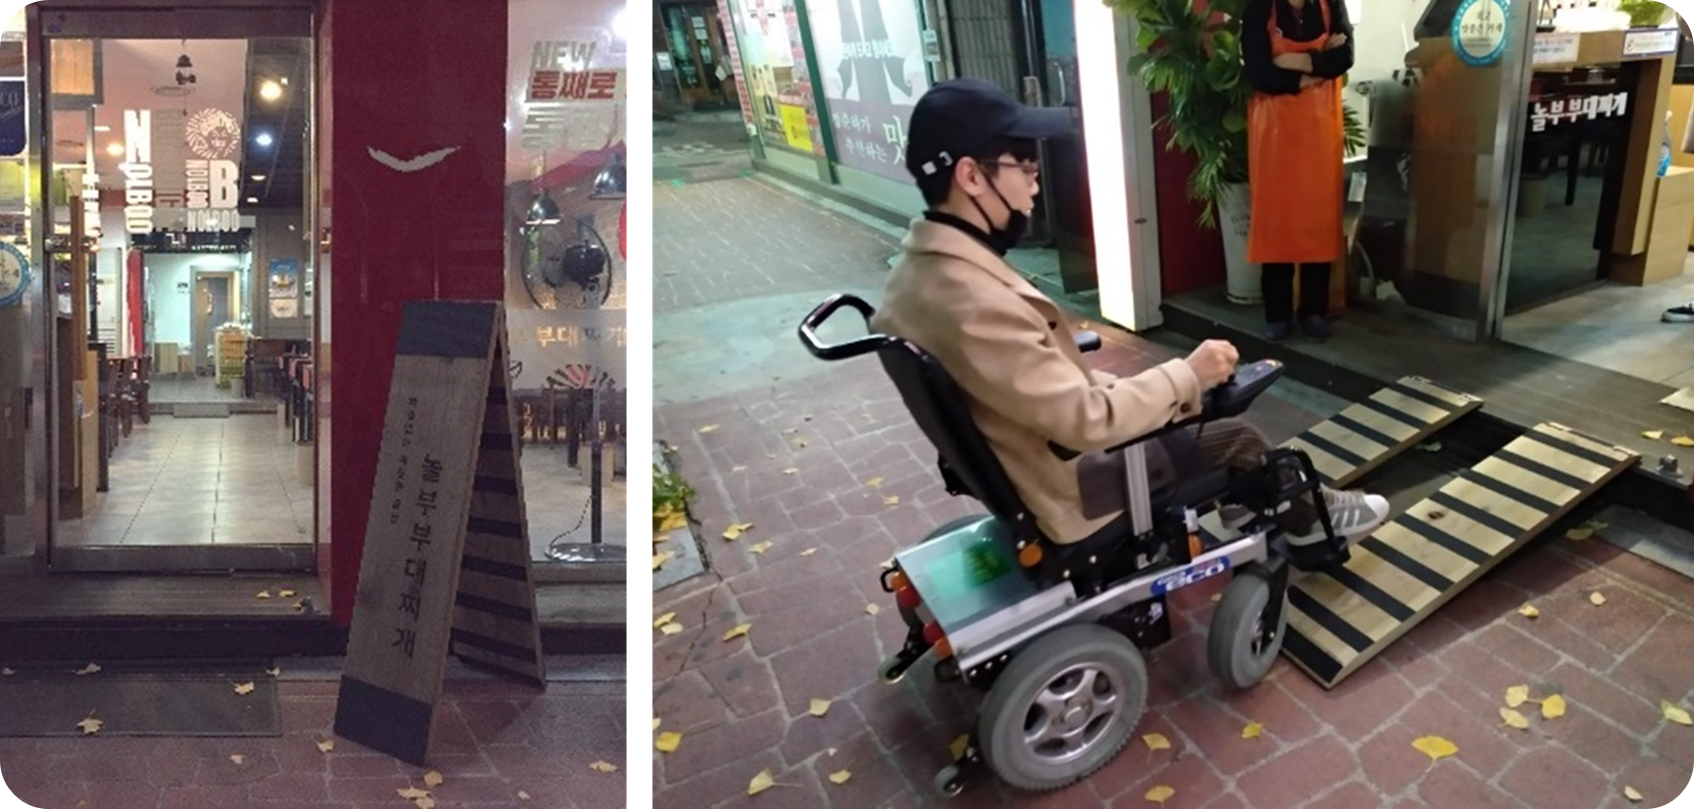 접이식 입간판 경사로 모습, 평상시에는 세워서 입간판으로 사용하다가 휠체어를 탄 손님이 오면 입간판을 분리하여 휠체어 바퀴가 가게 입구에 진입하는 것을 돕는 경사로로 사용한다